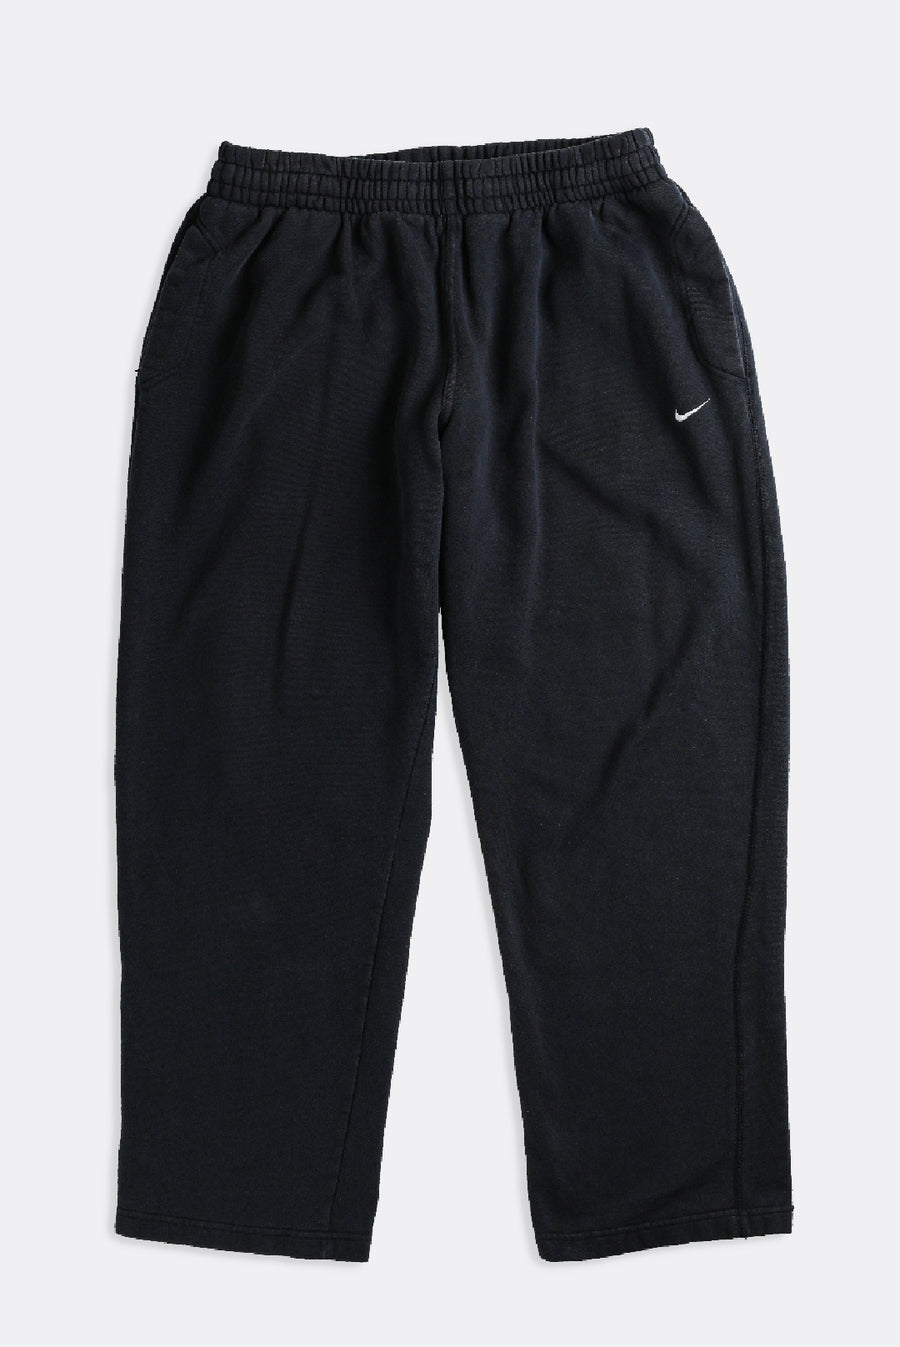 Vintage Nike Sweatpants - XL